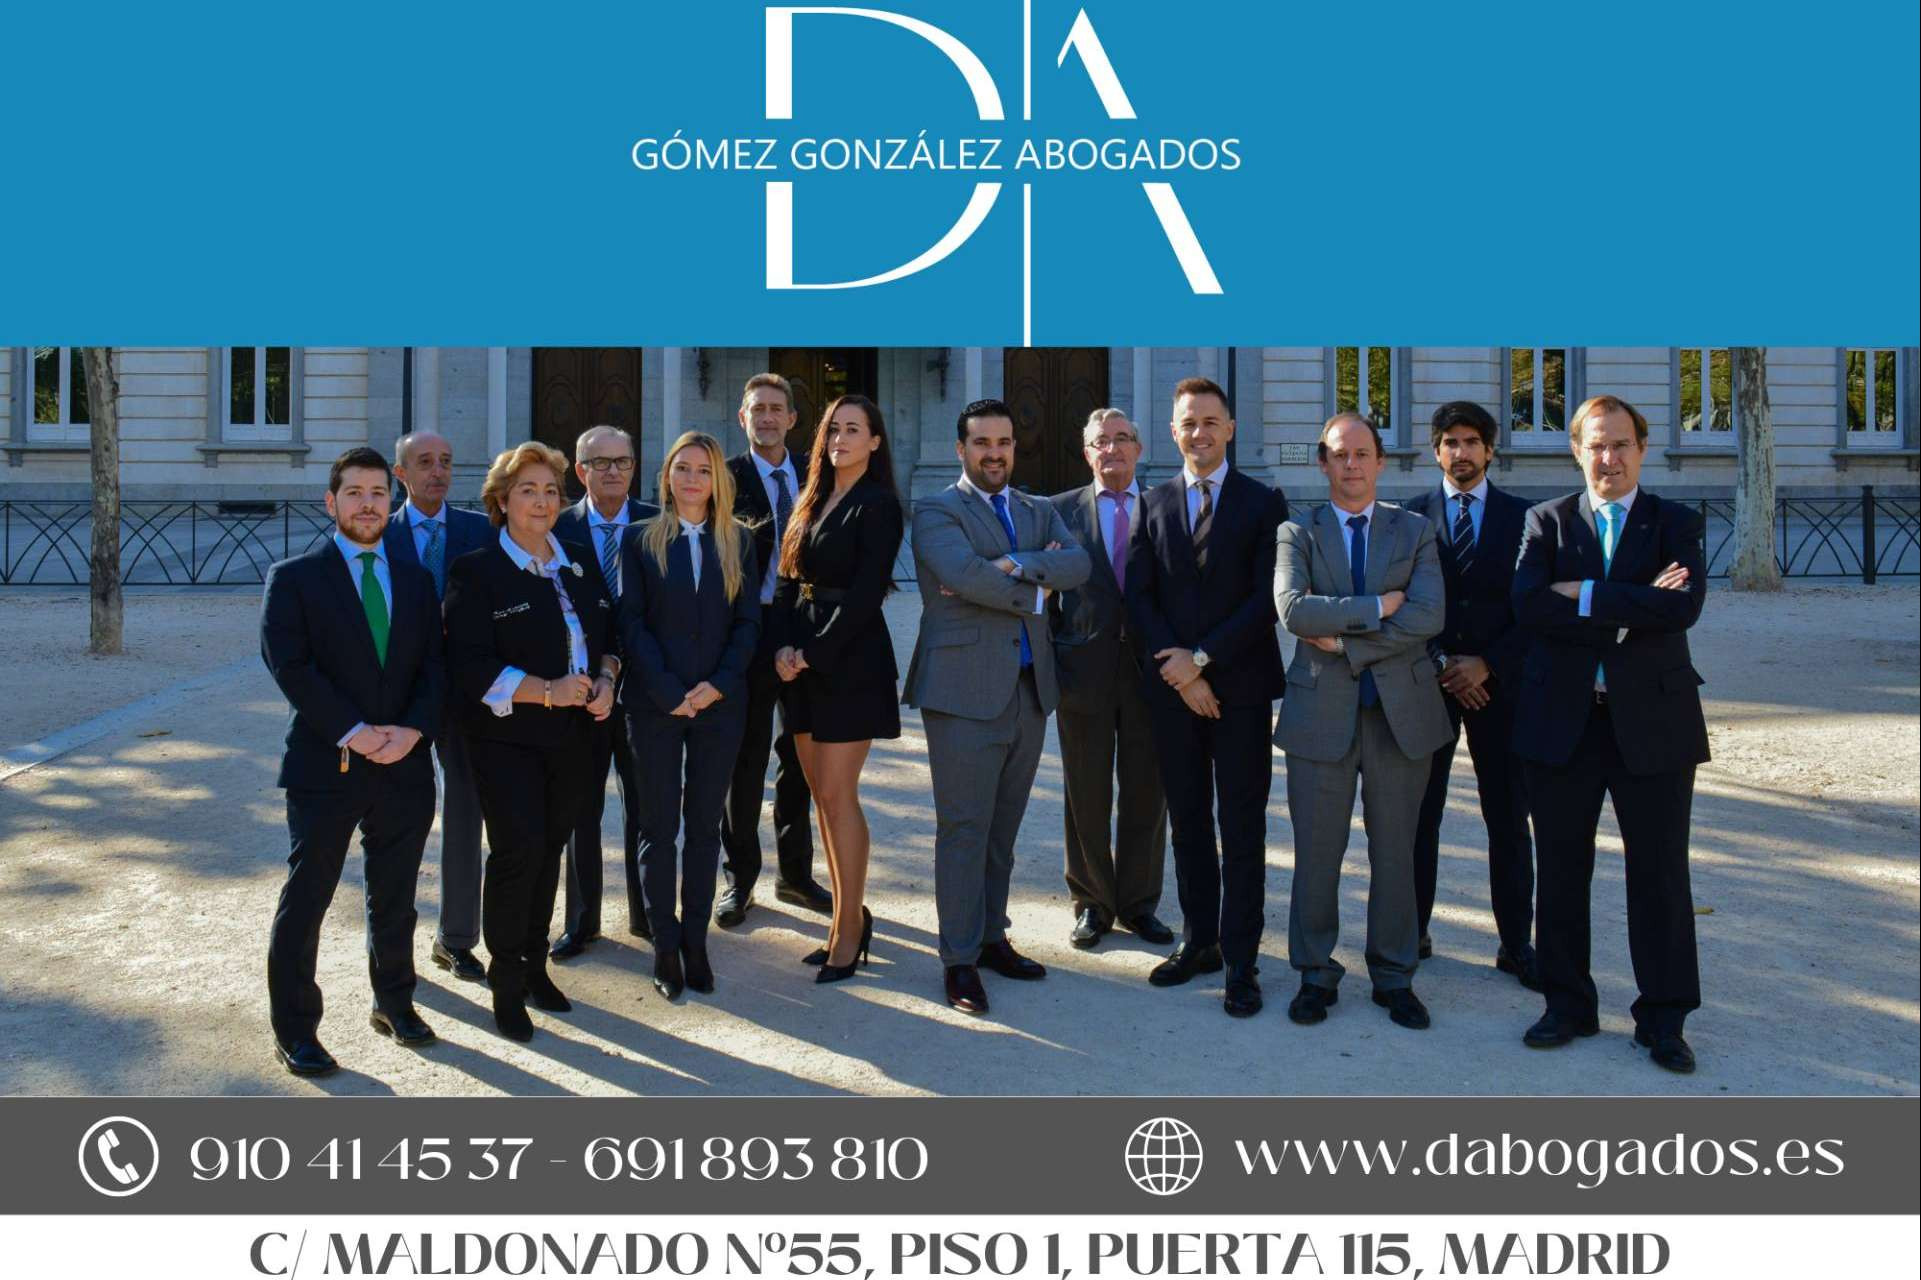  Dabogados, abogados de familia en Madrid especialistas en casos de divorcio y liquidación de gananciales 